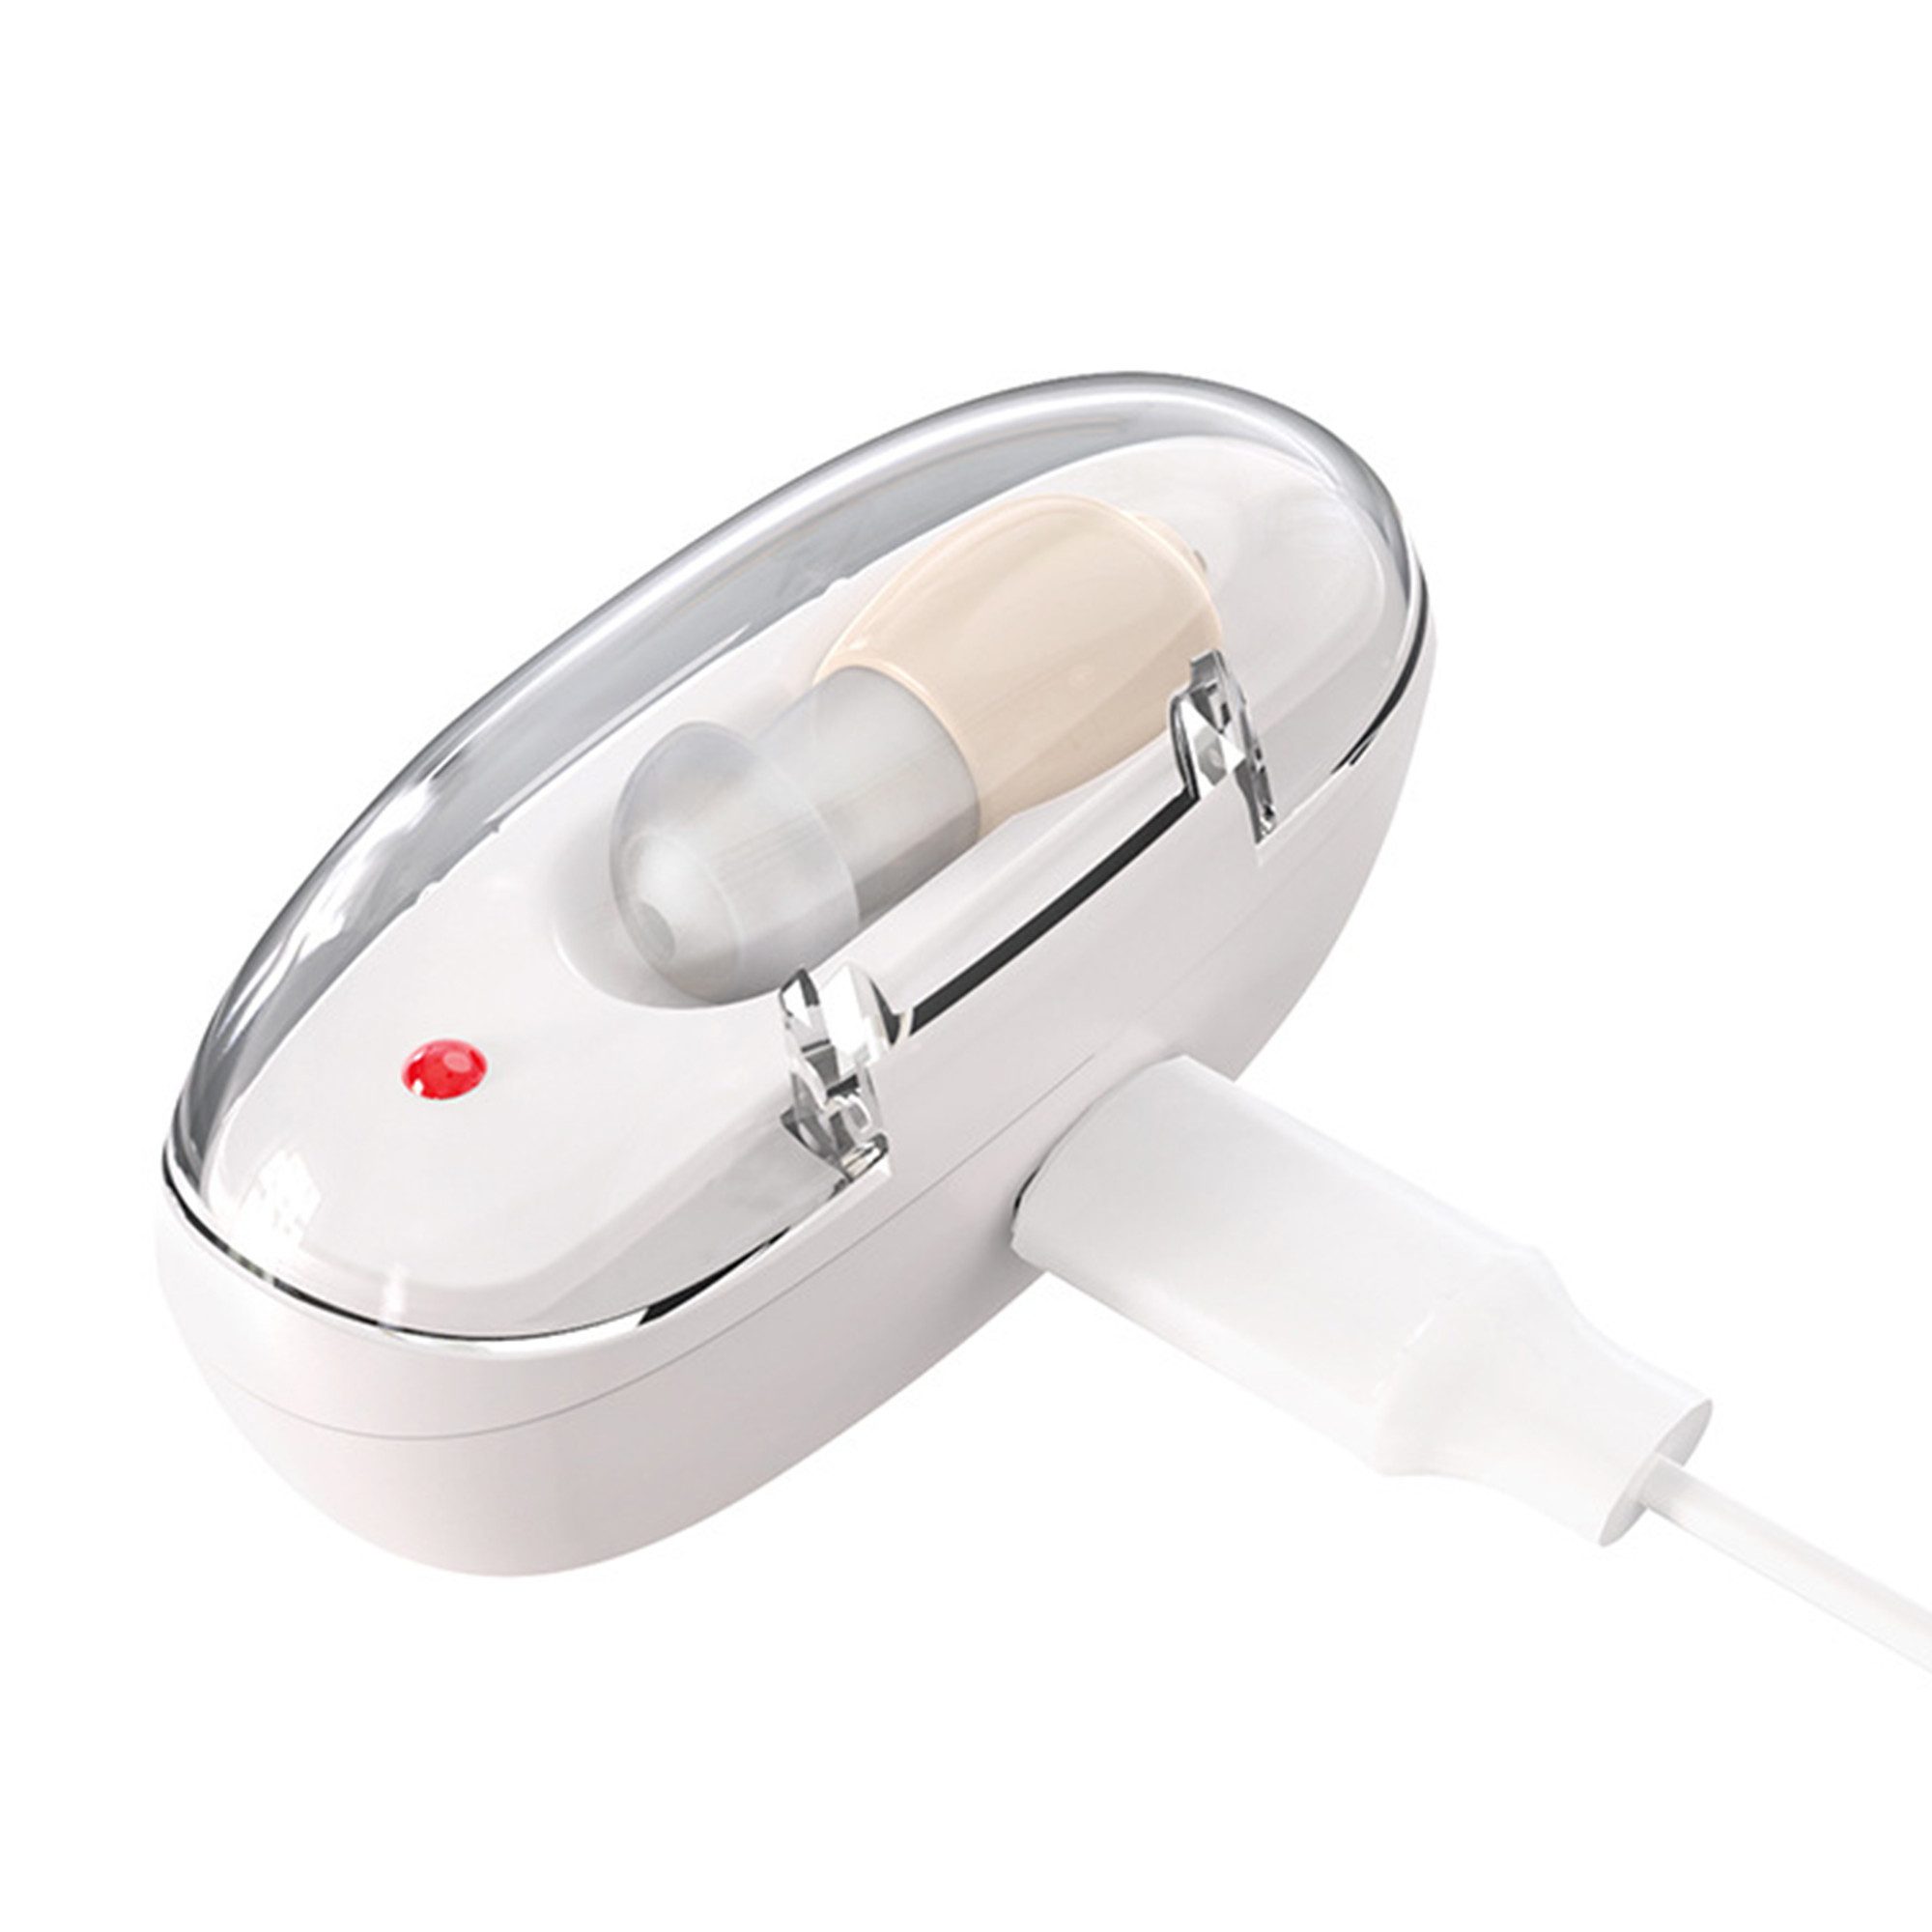 BUMHUM Hörverstärker Hörgerät für Senioren, wiederaufladbarer Ohrhörer-Typ Hörverstärker, Verstärker für die Stimme